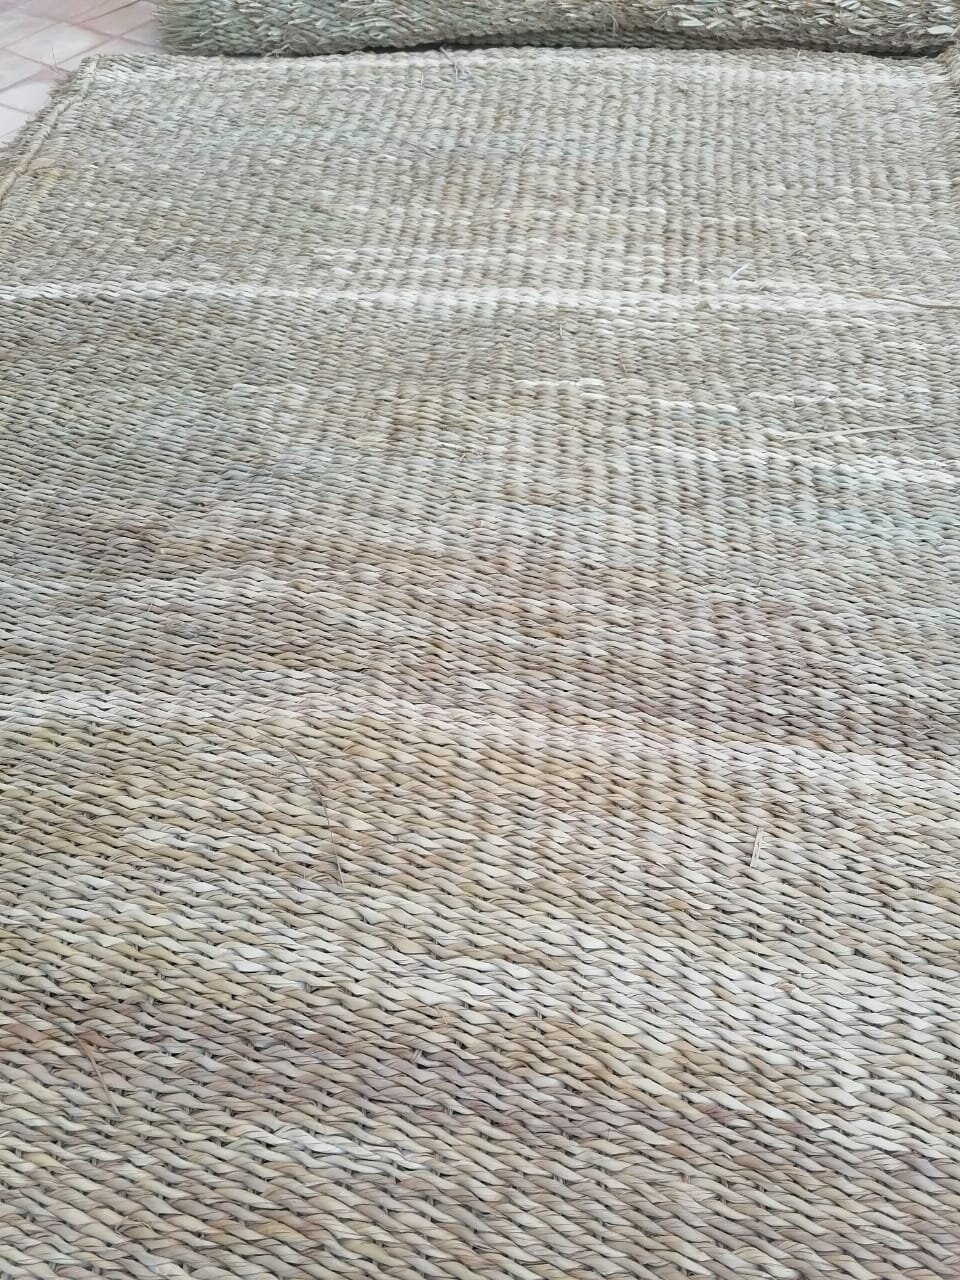 Handwoven-Jute-Rug-Moroccan-Berber-Carpets00004.jpeg